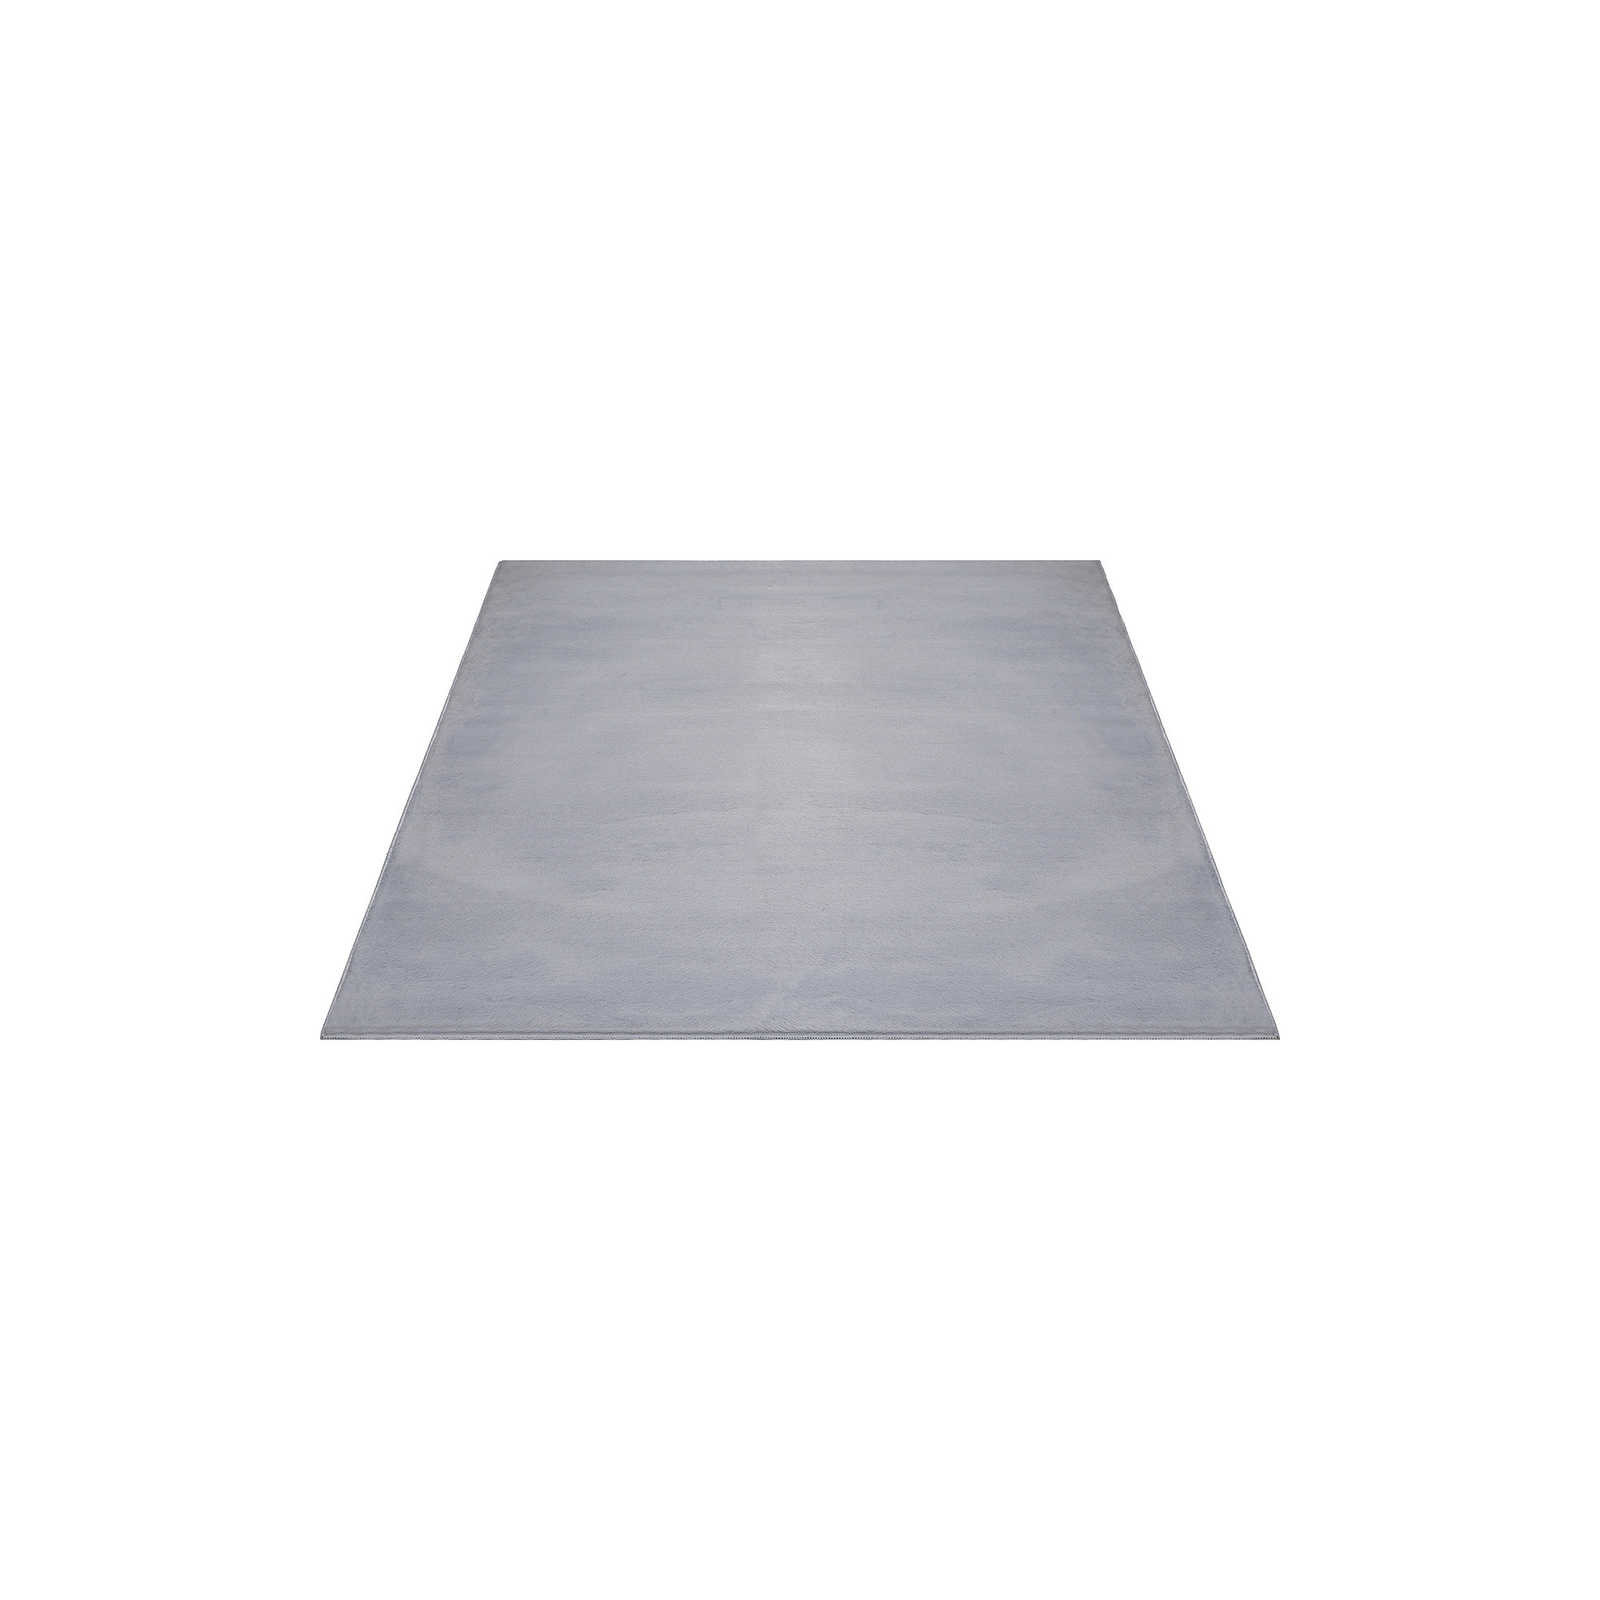 Angenehmer Hochflor Teppich in sanften Grau – 200 x 140 cm
